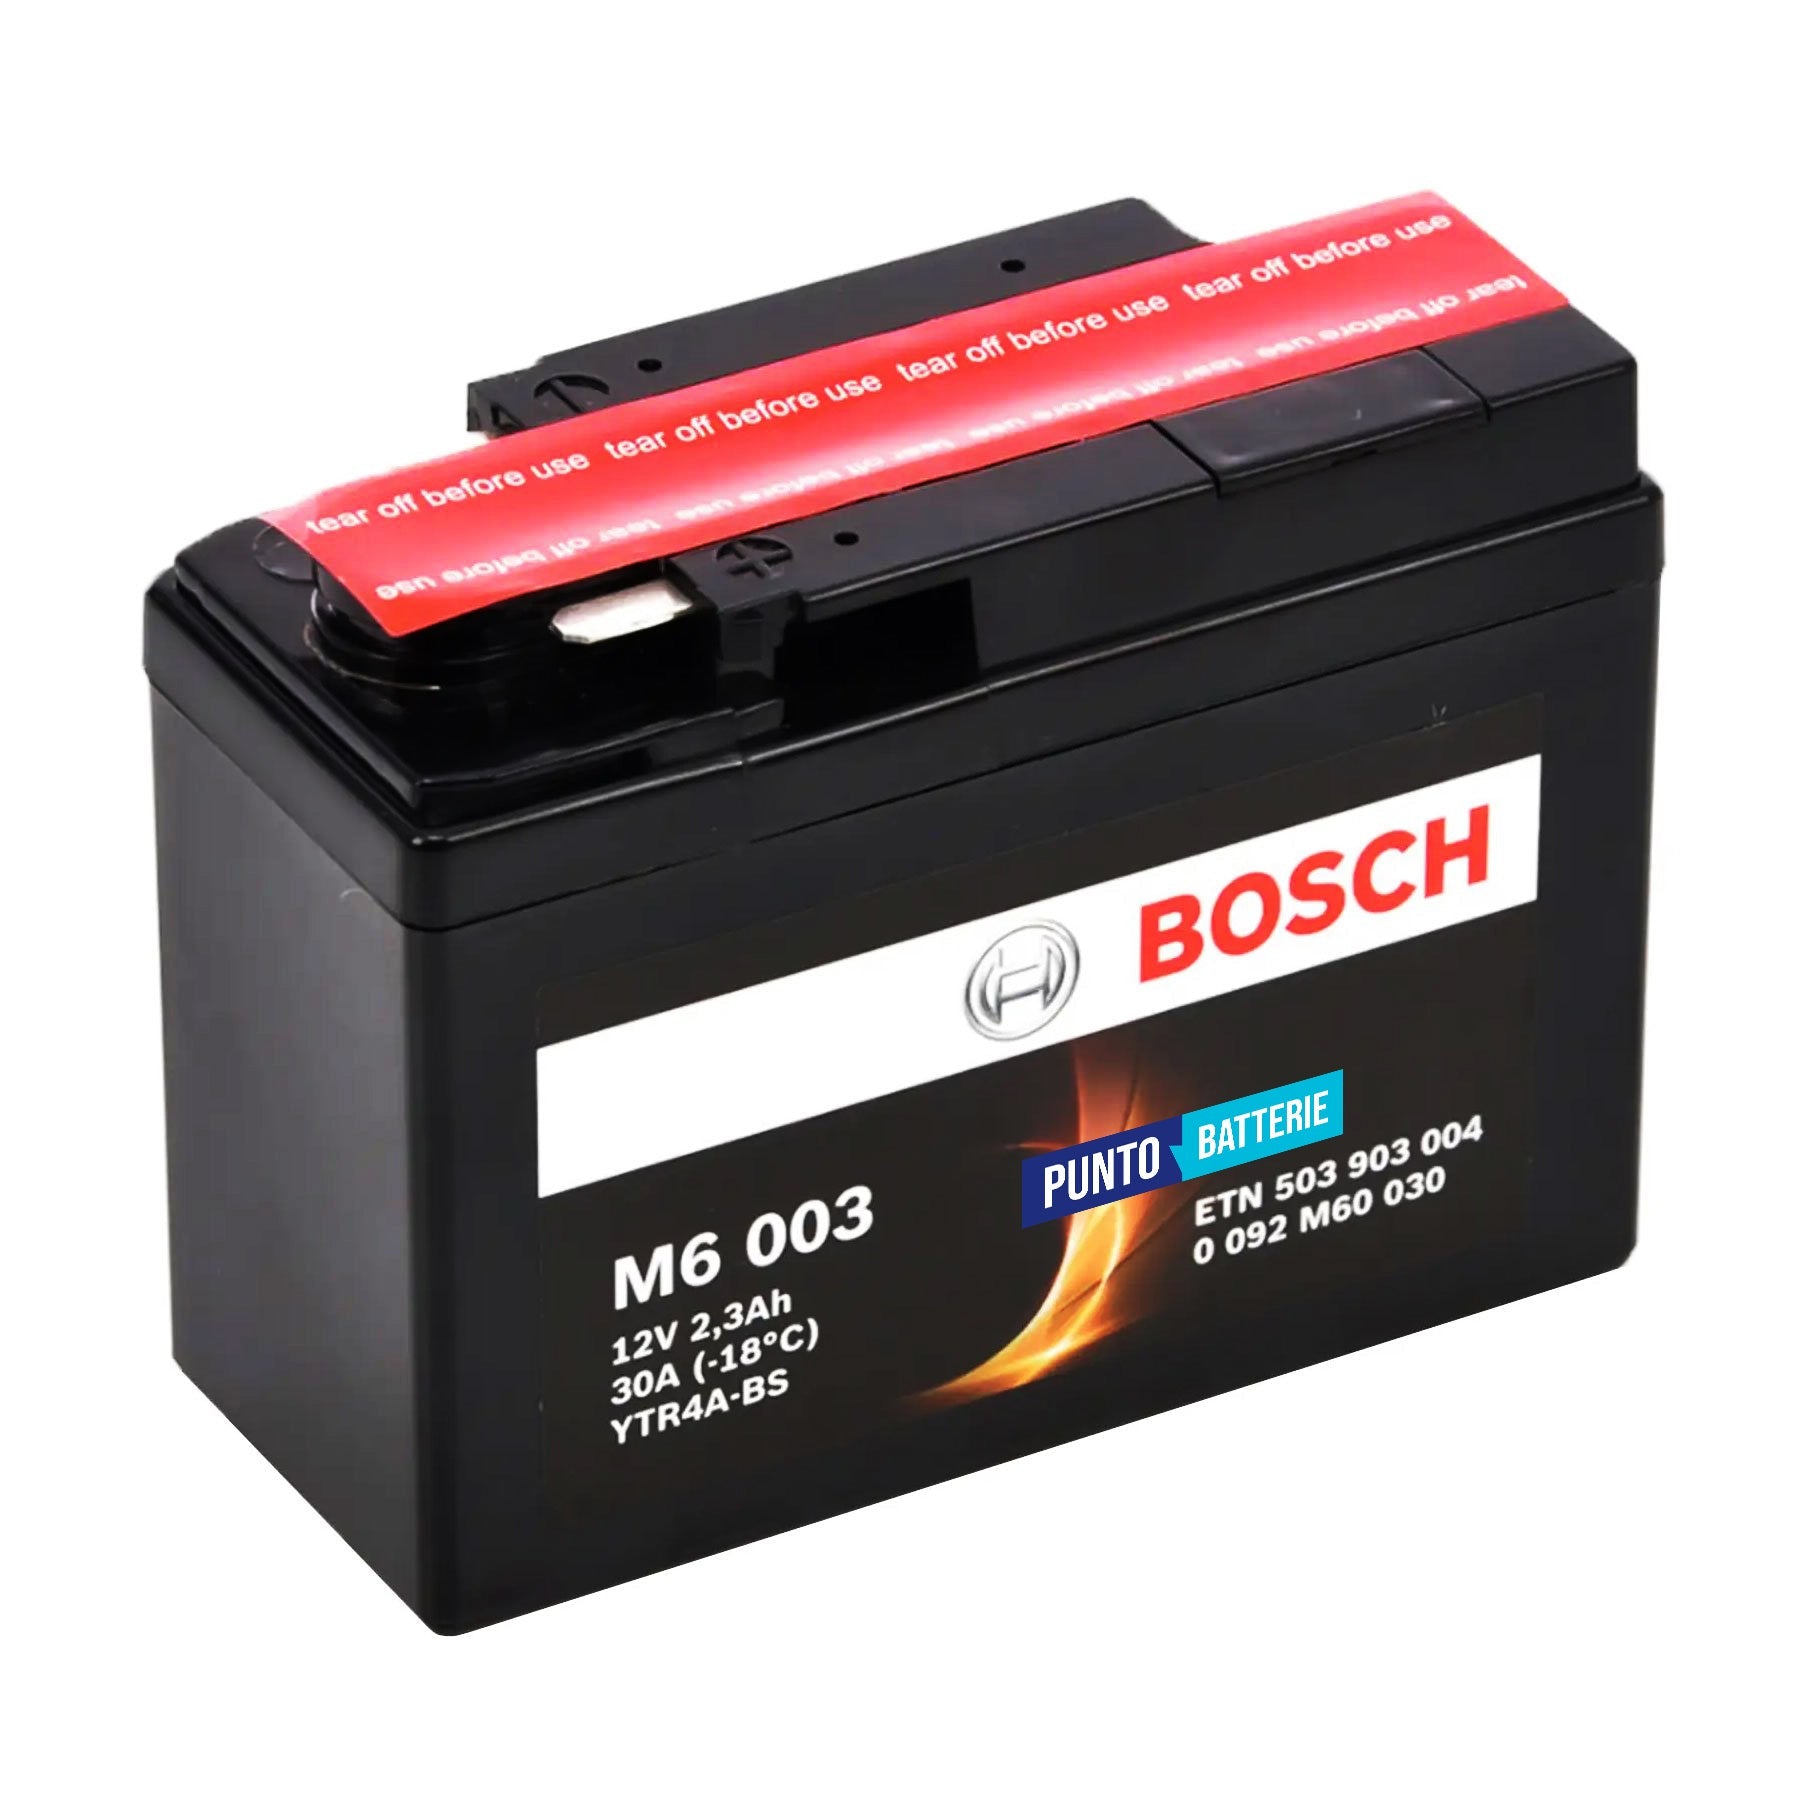 Batteria originale Bosch M6 M6003, dimensioni 113 x 48 x 85, polo positivo a destra, 12 volt, 2 amperora, 30 ampere. Batteria per moto, scooter e powersport.